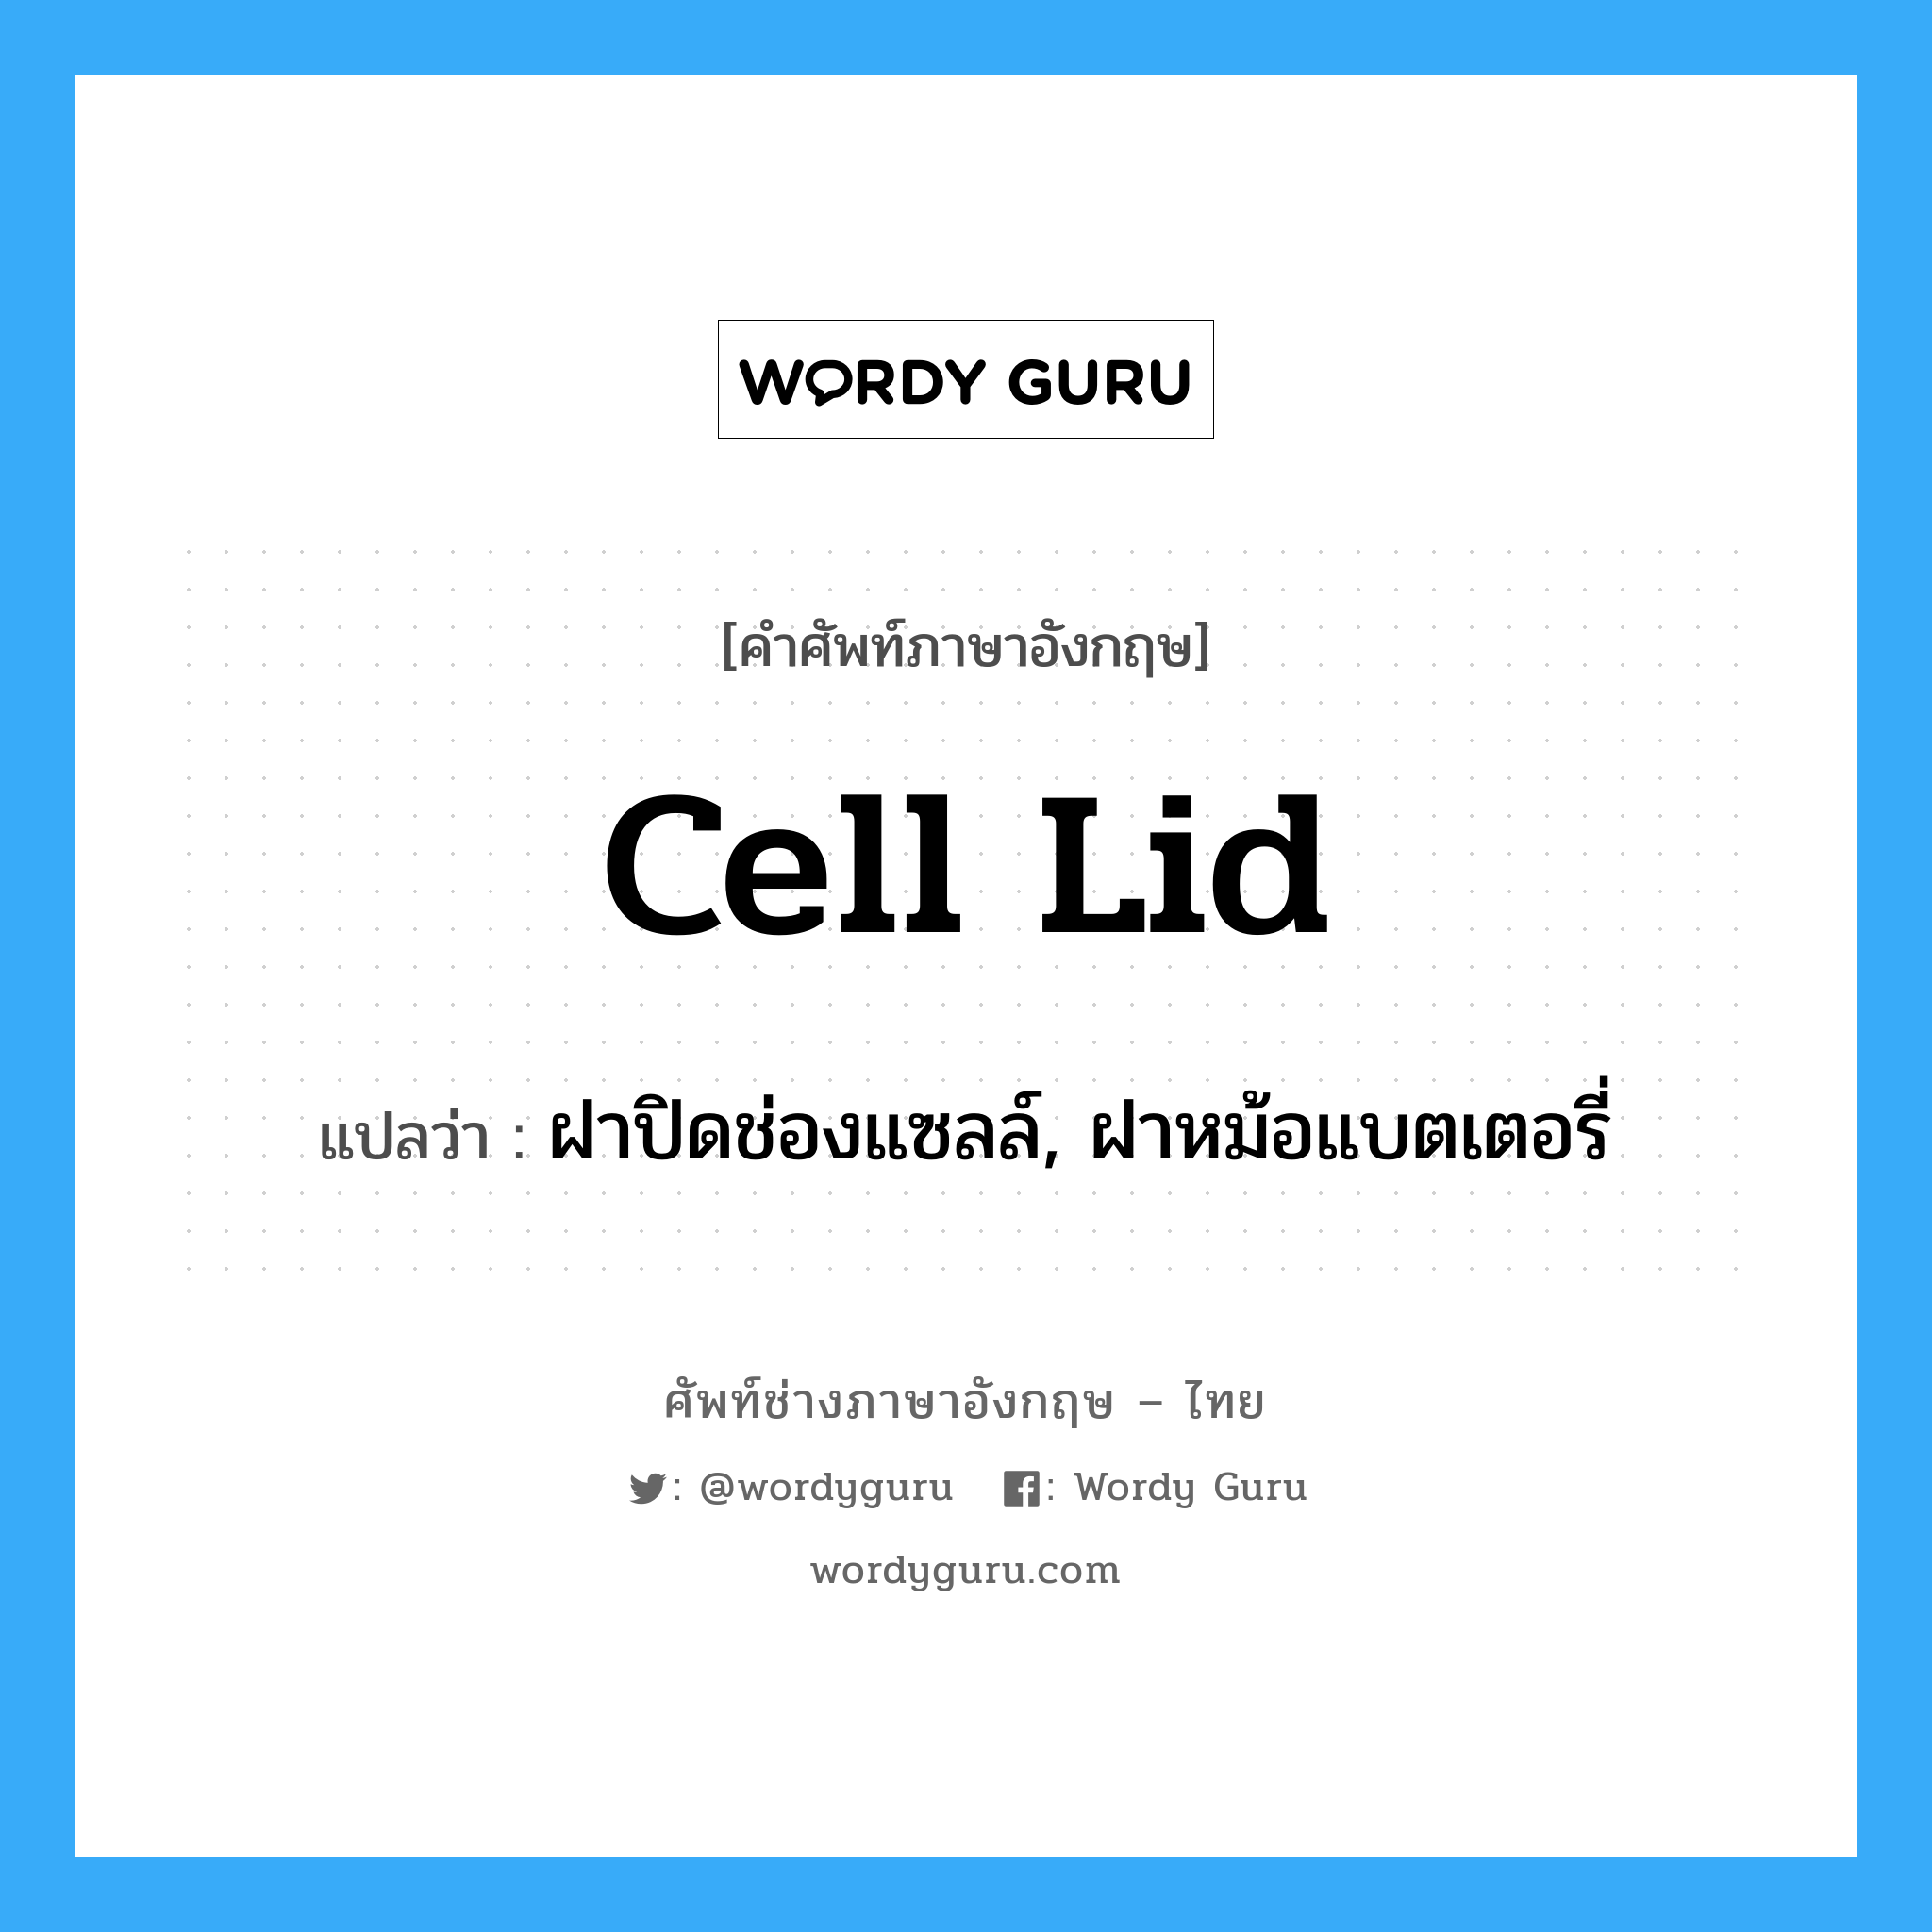 cell lid แปลว่า?, คำศัพท์ช่างภาษาอังกฤษ - ไทย cell lid คำศัพท์ภาษาอังกฤษ cell lid แปลว่า ฝาปิดช่องแซลล์, ฝาหม้อแบตเตอรี่